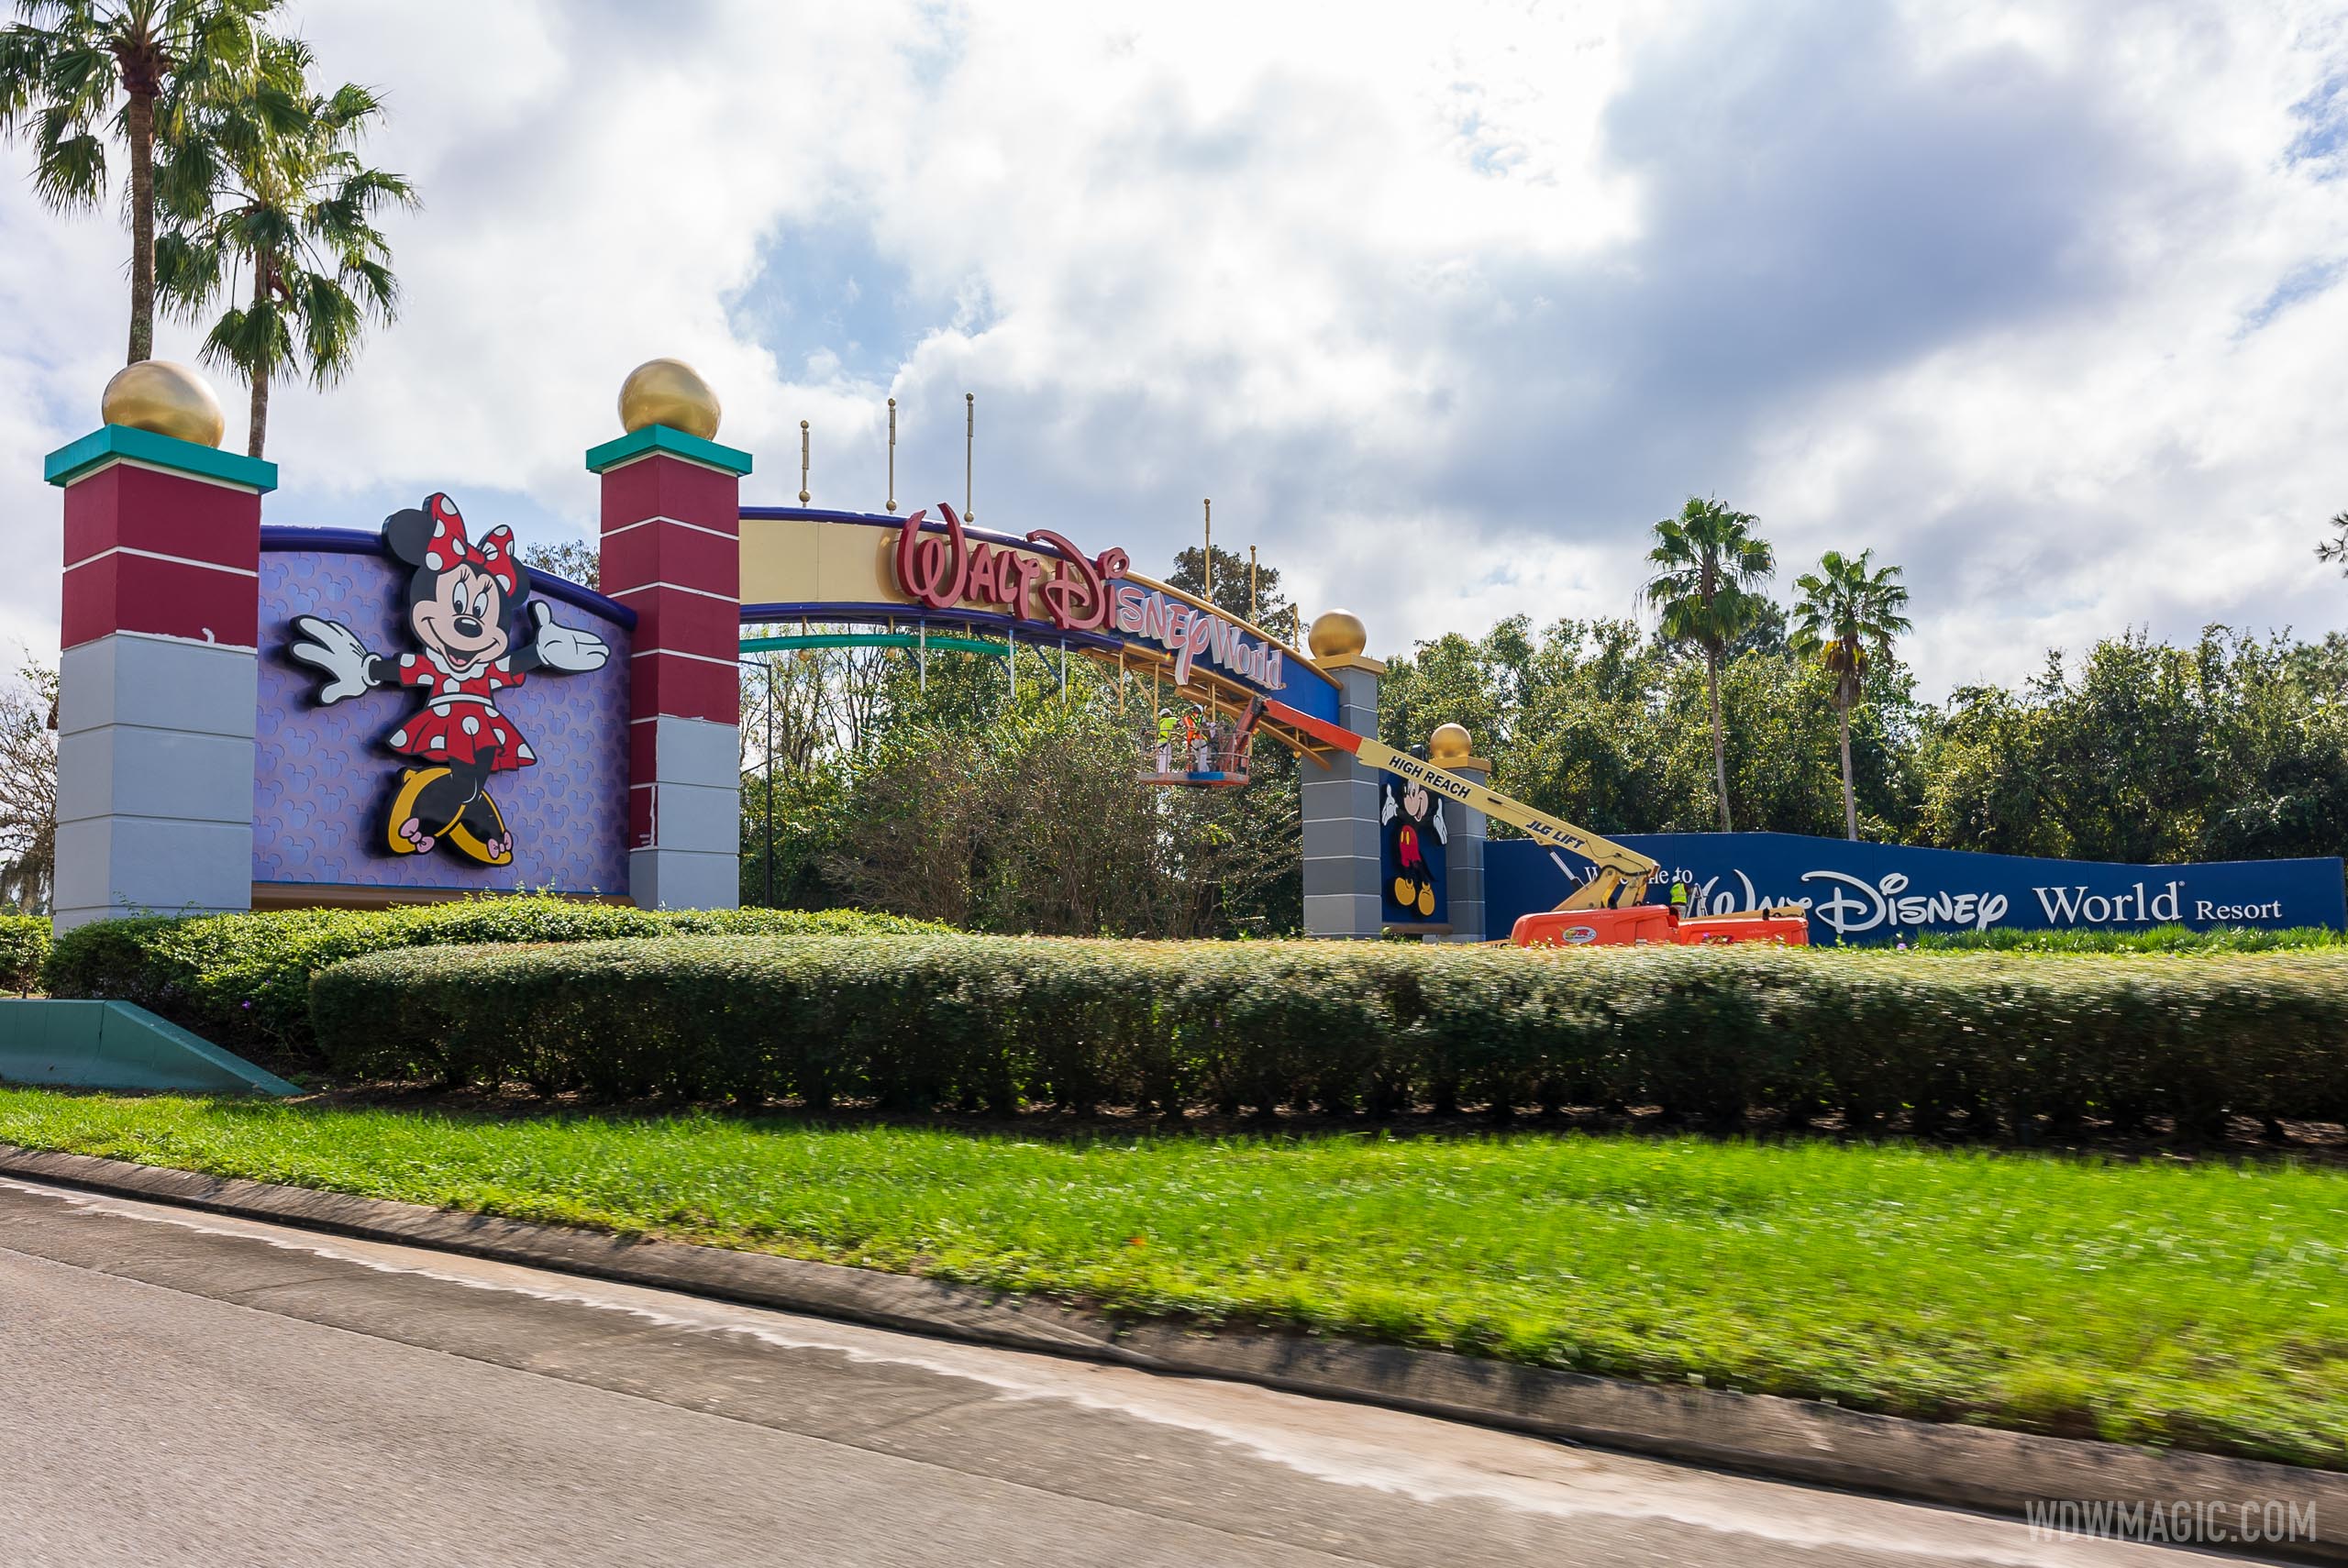 Walt Disney World’s Western Way gateway entrance refurbishment